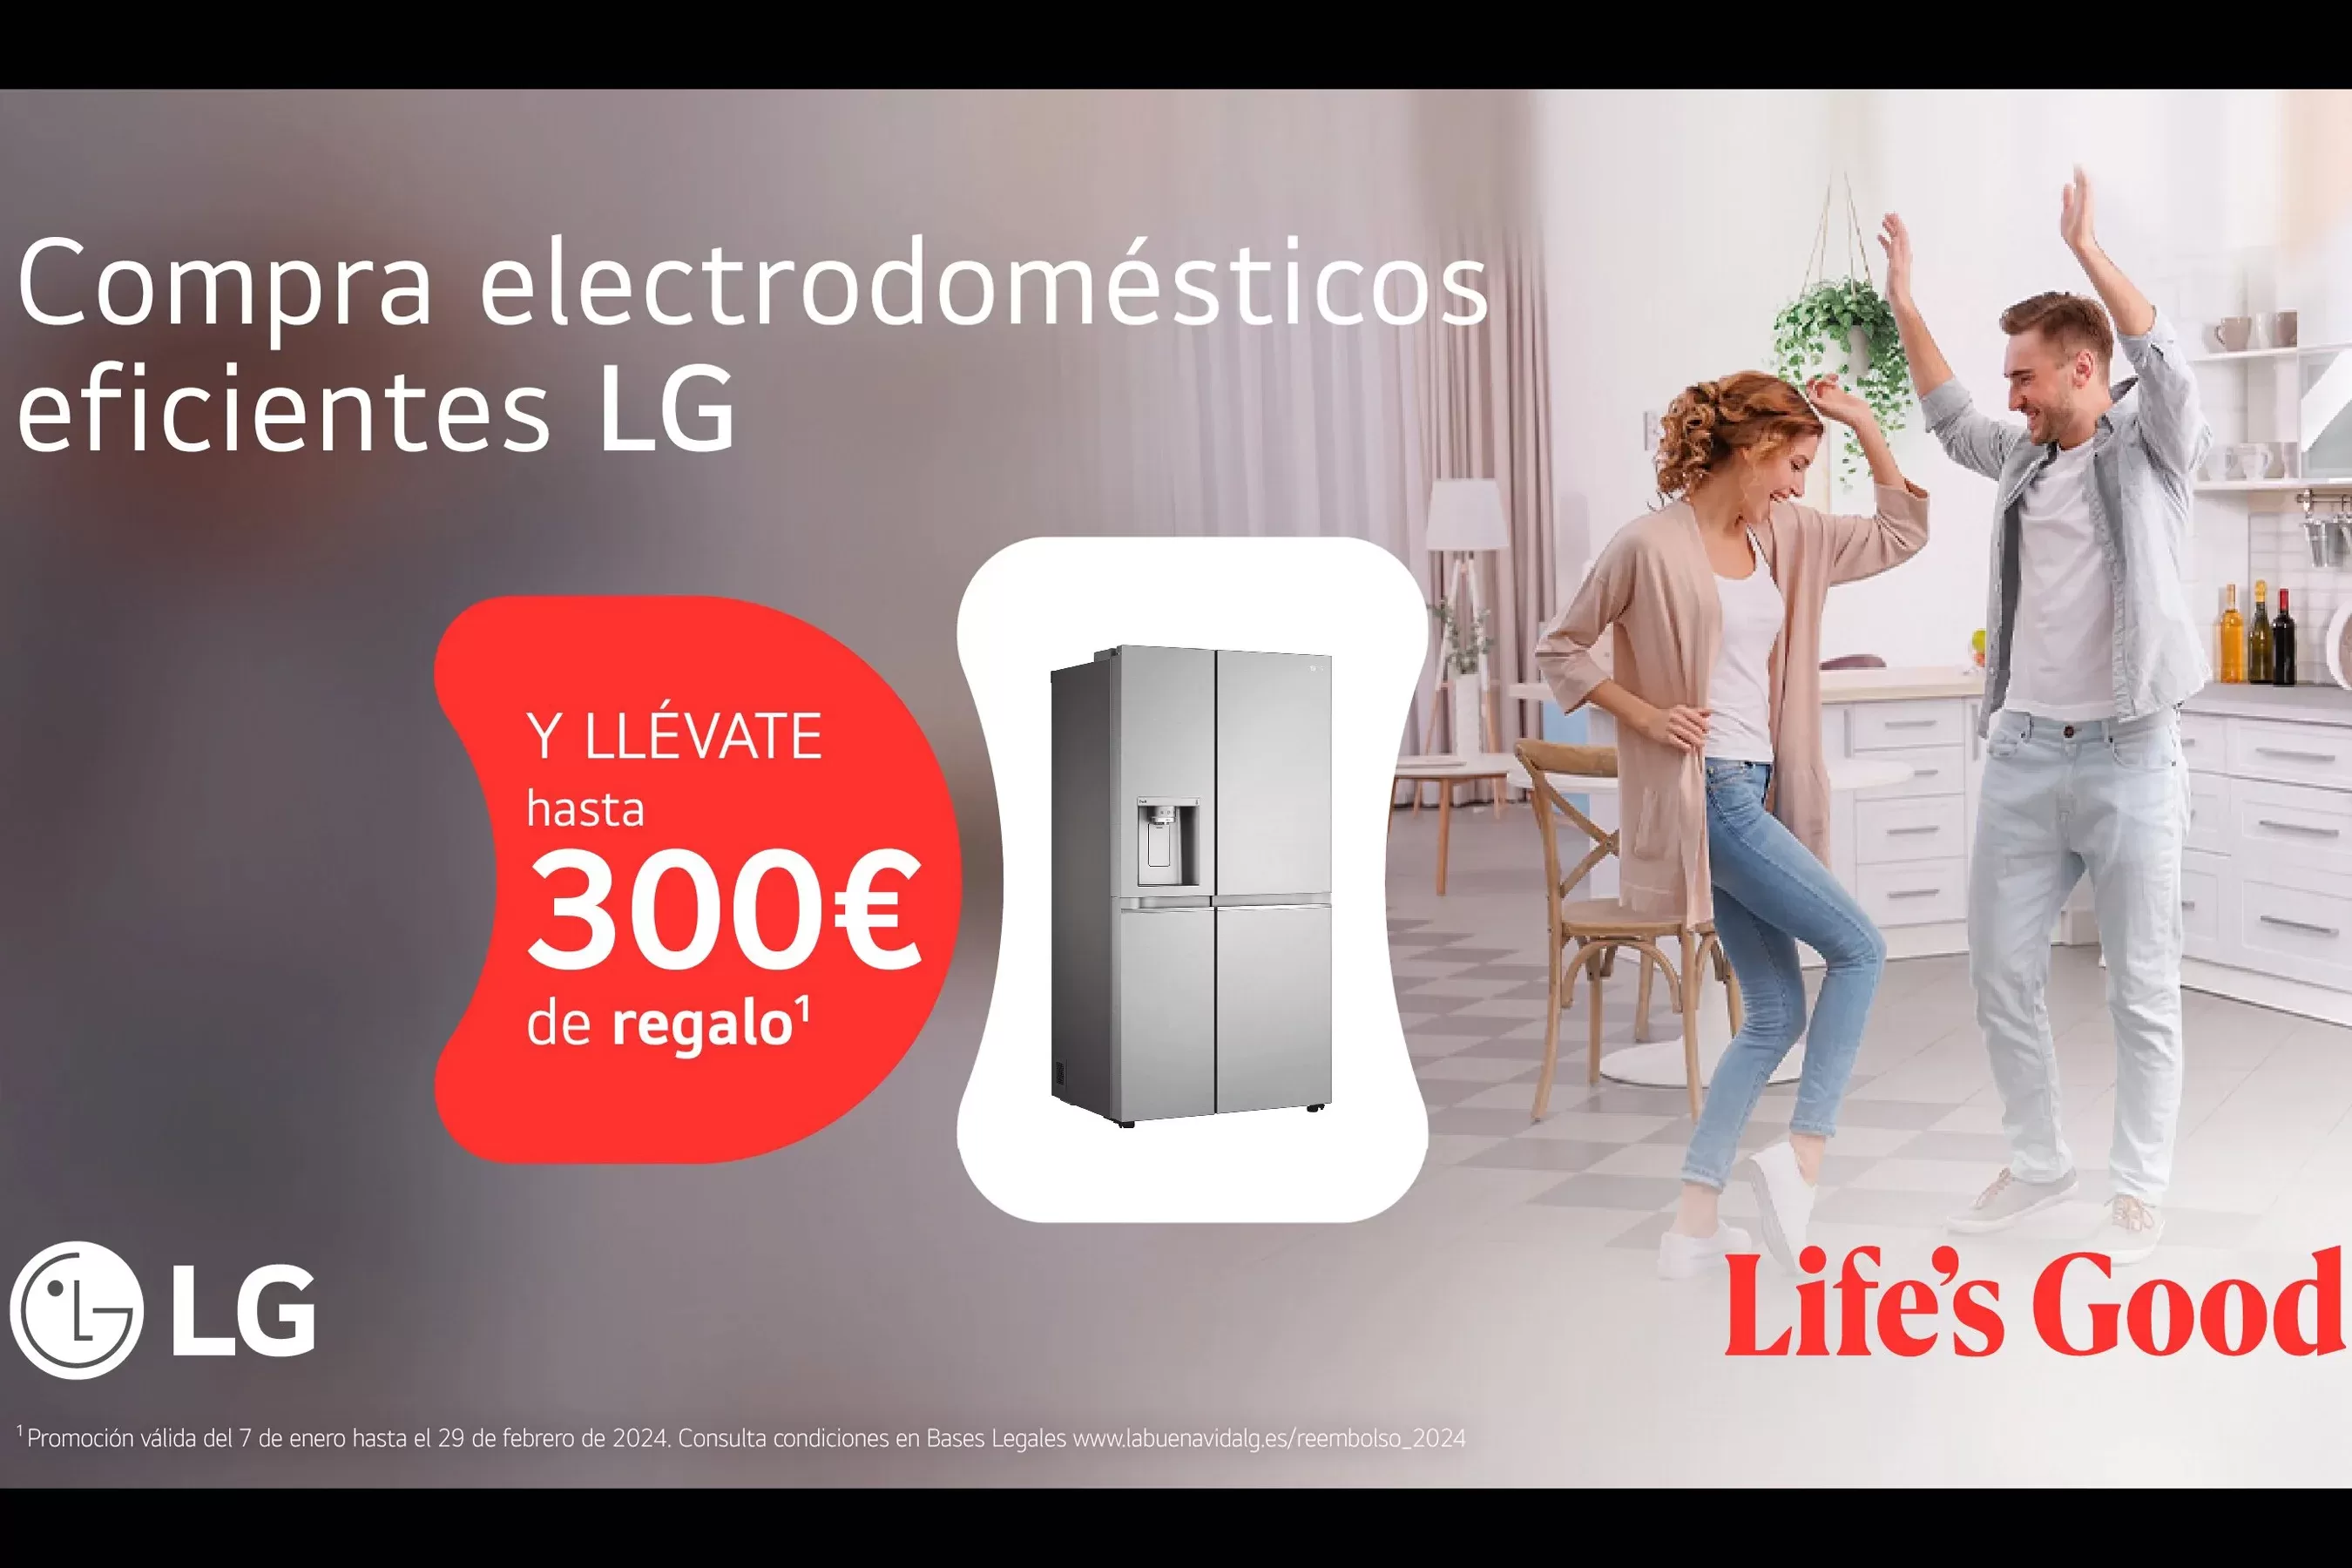 LG Compra un electrodoméstico eficiente y llévate hasta 300€ de regalo